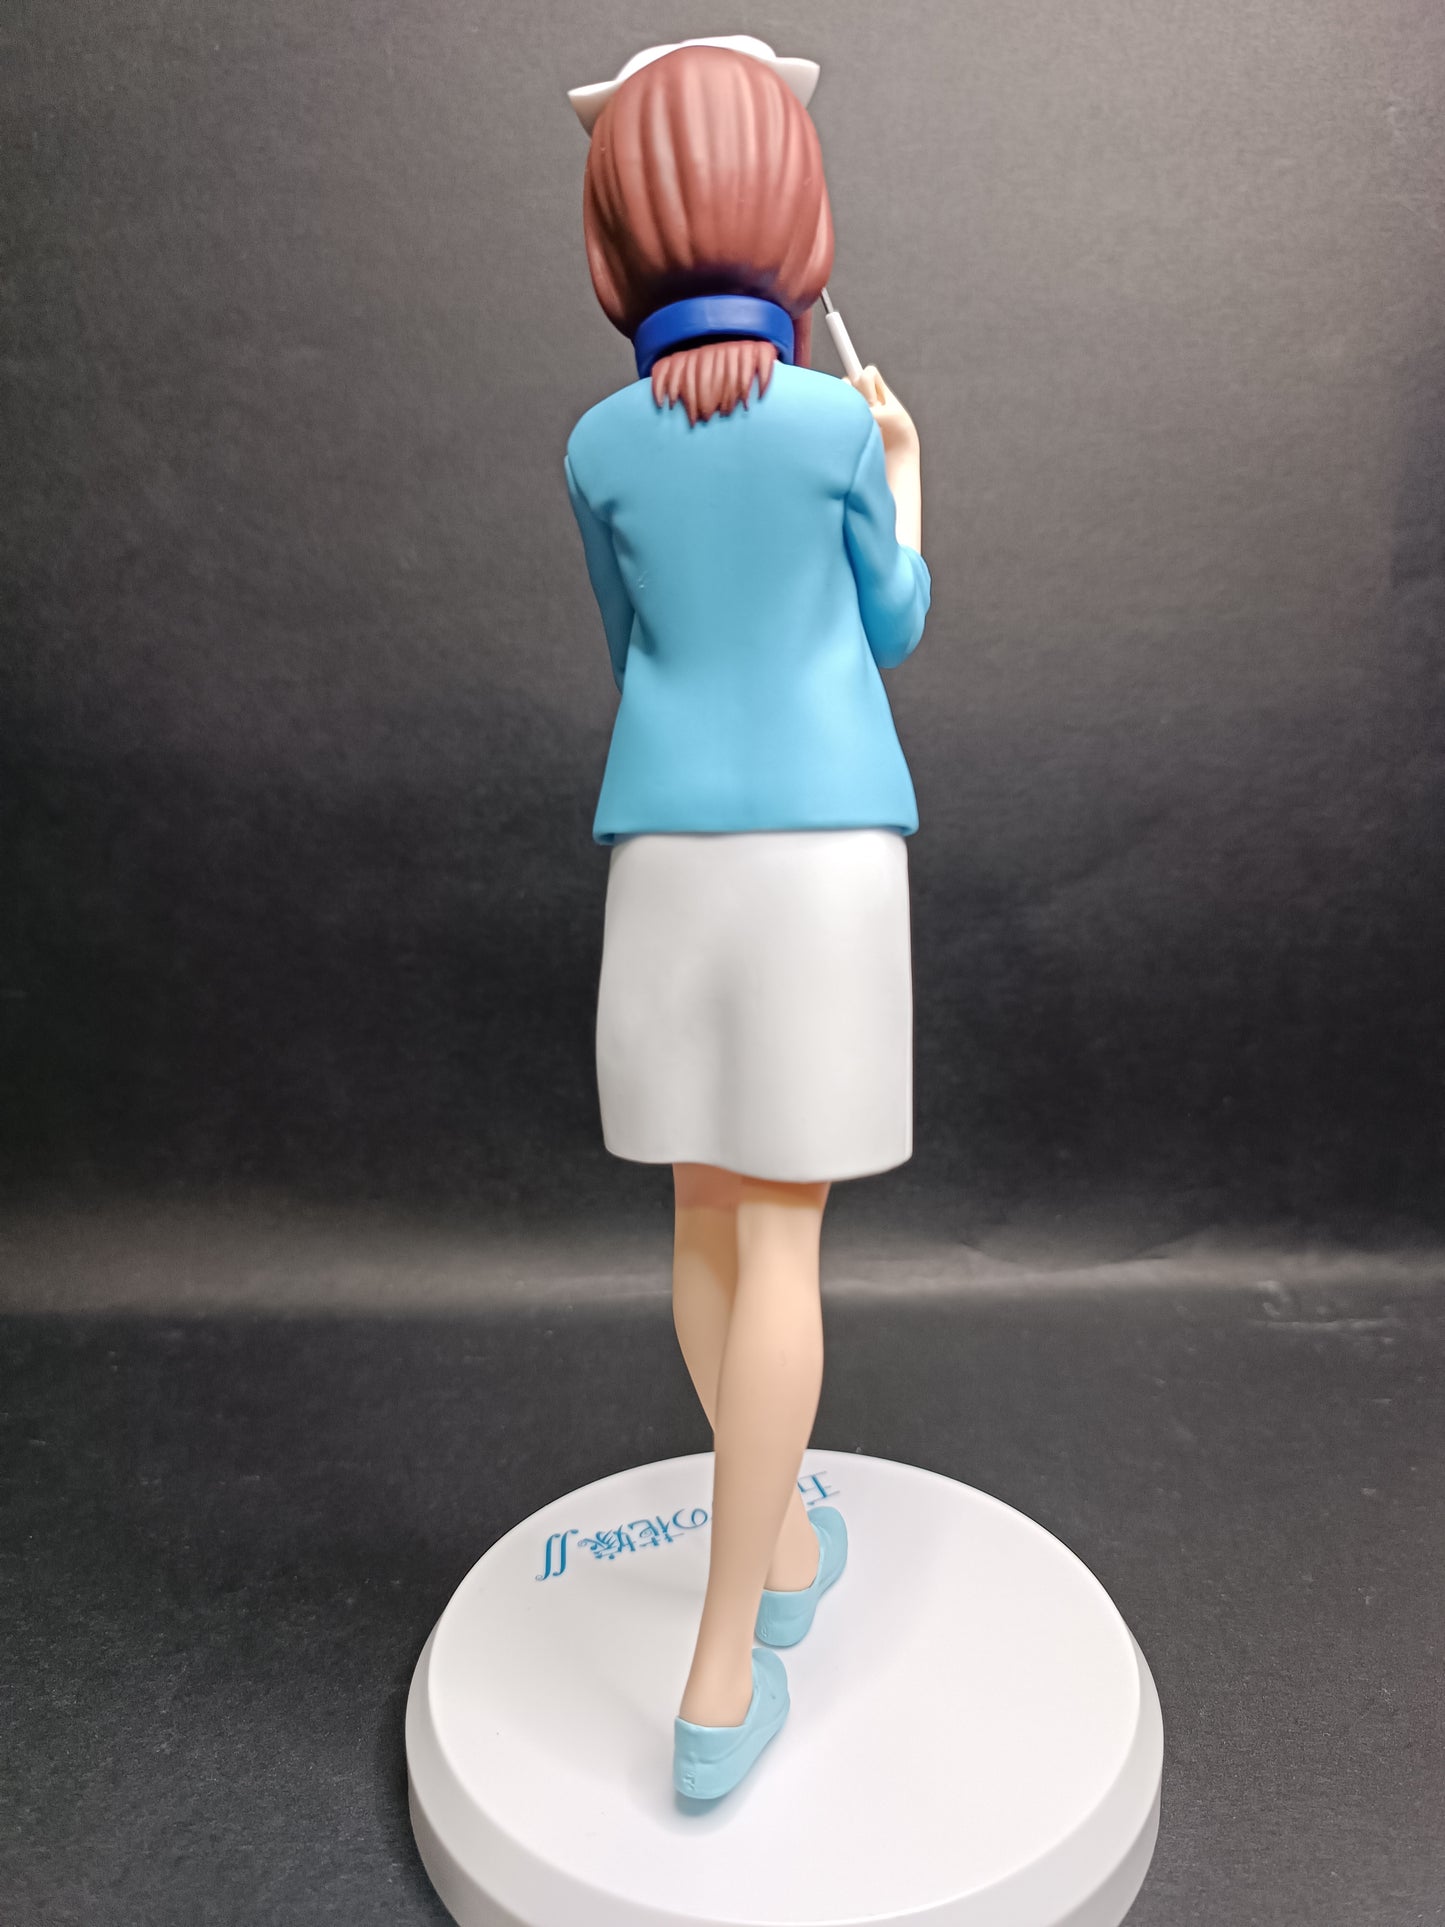 The Quintessential Quintuplets 2 Miku Nakano (Nurse Ver.) Super Premium Figure (Sin Caja)